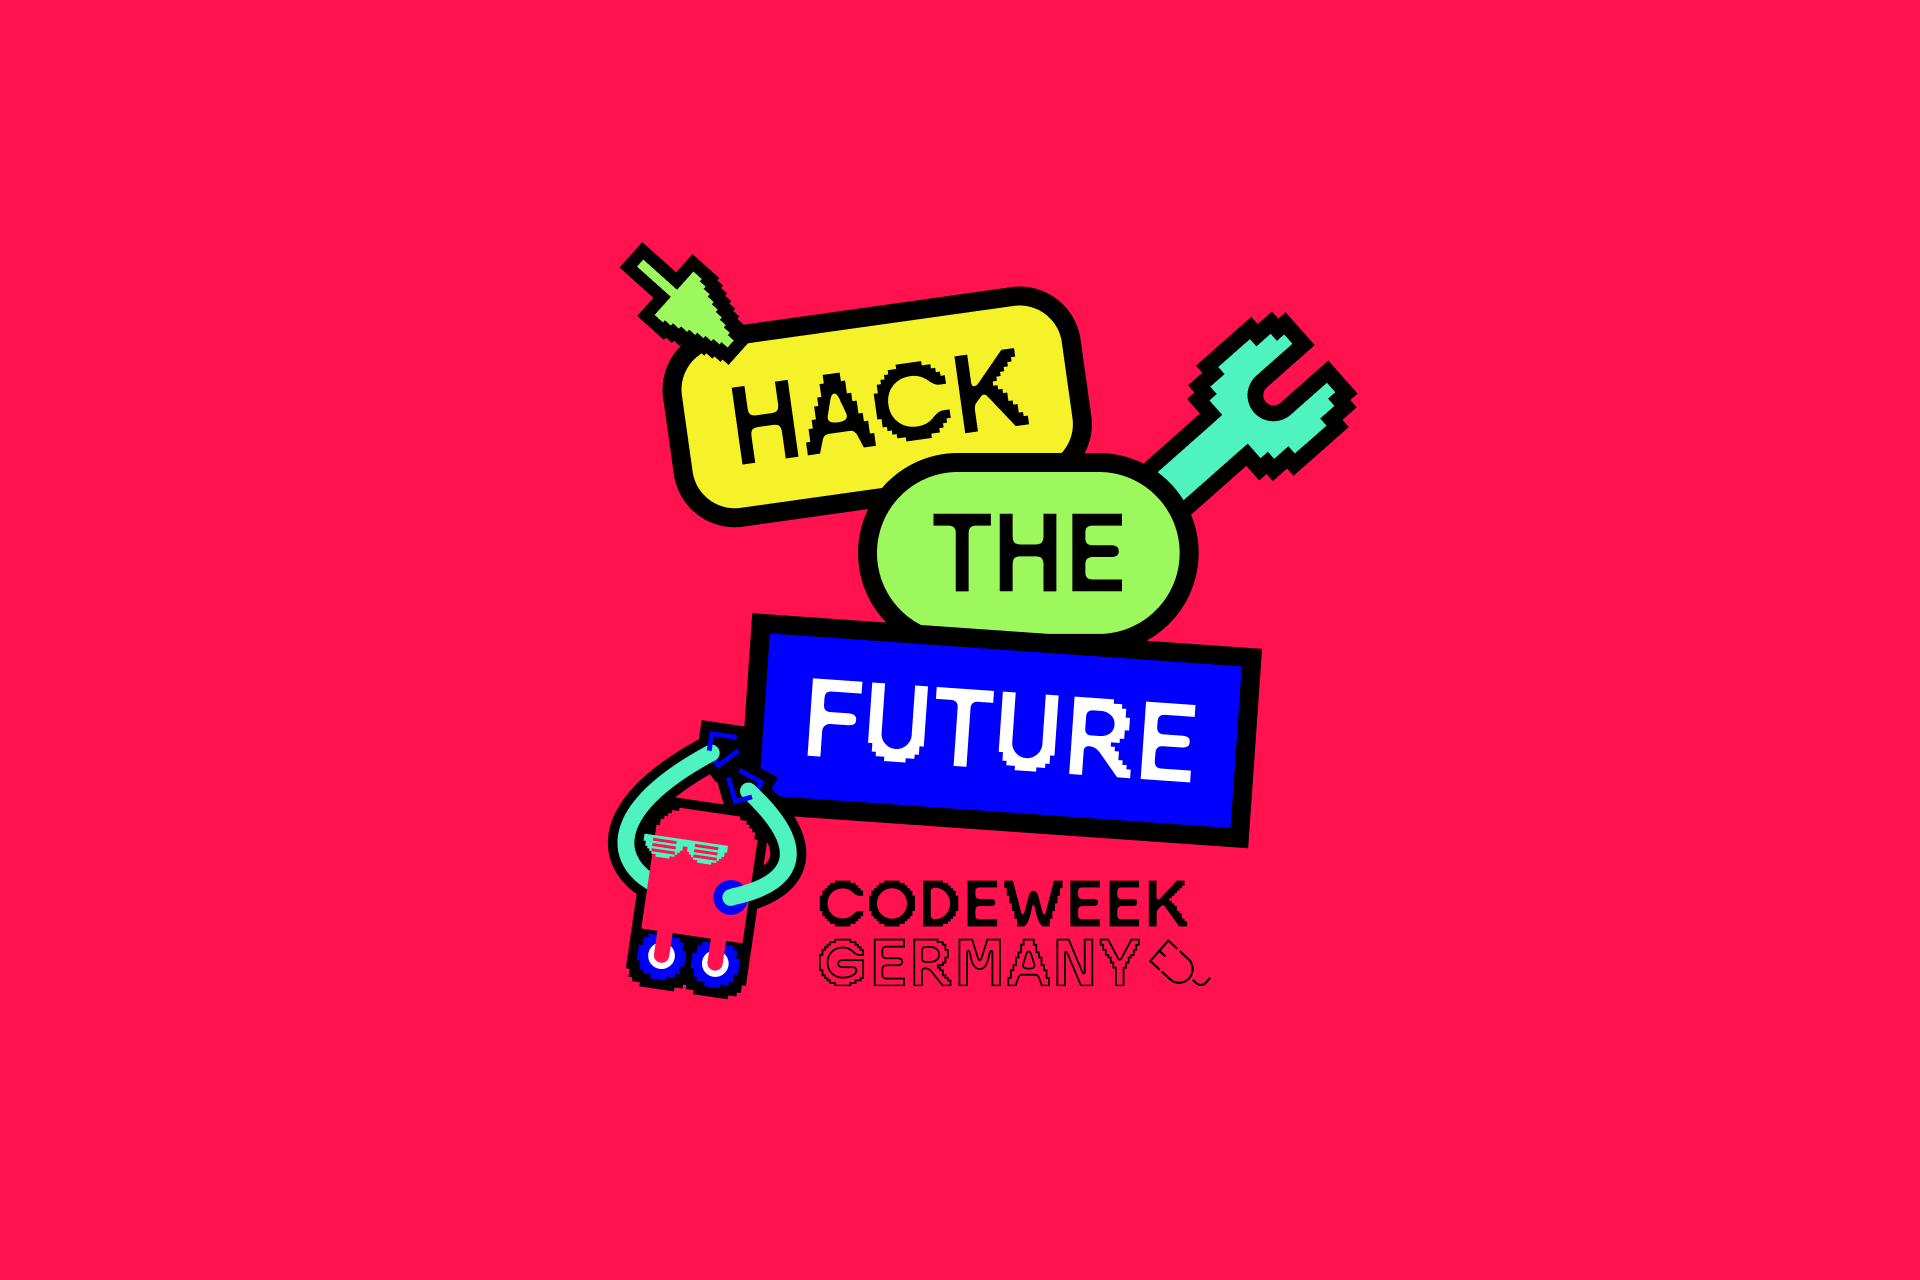 Codeweek Hack the Future